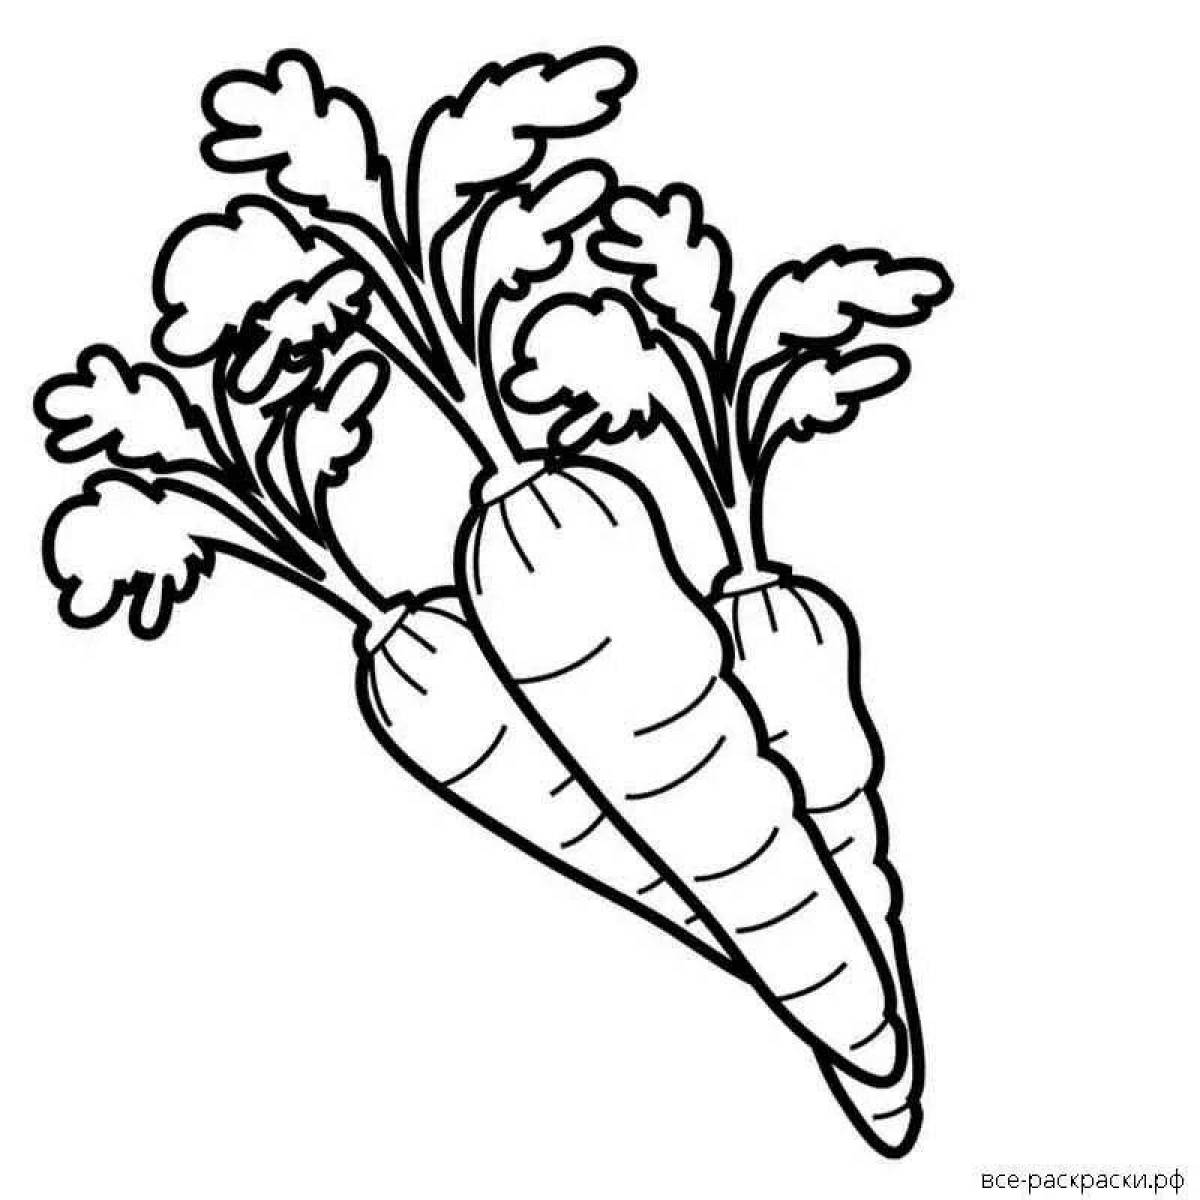 Увлекательная морковная раскраска для малышей 3-4 лет